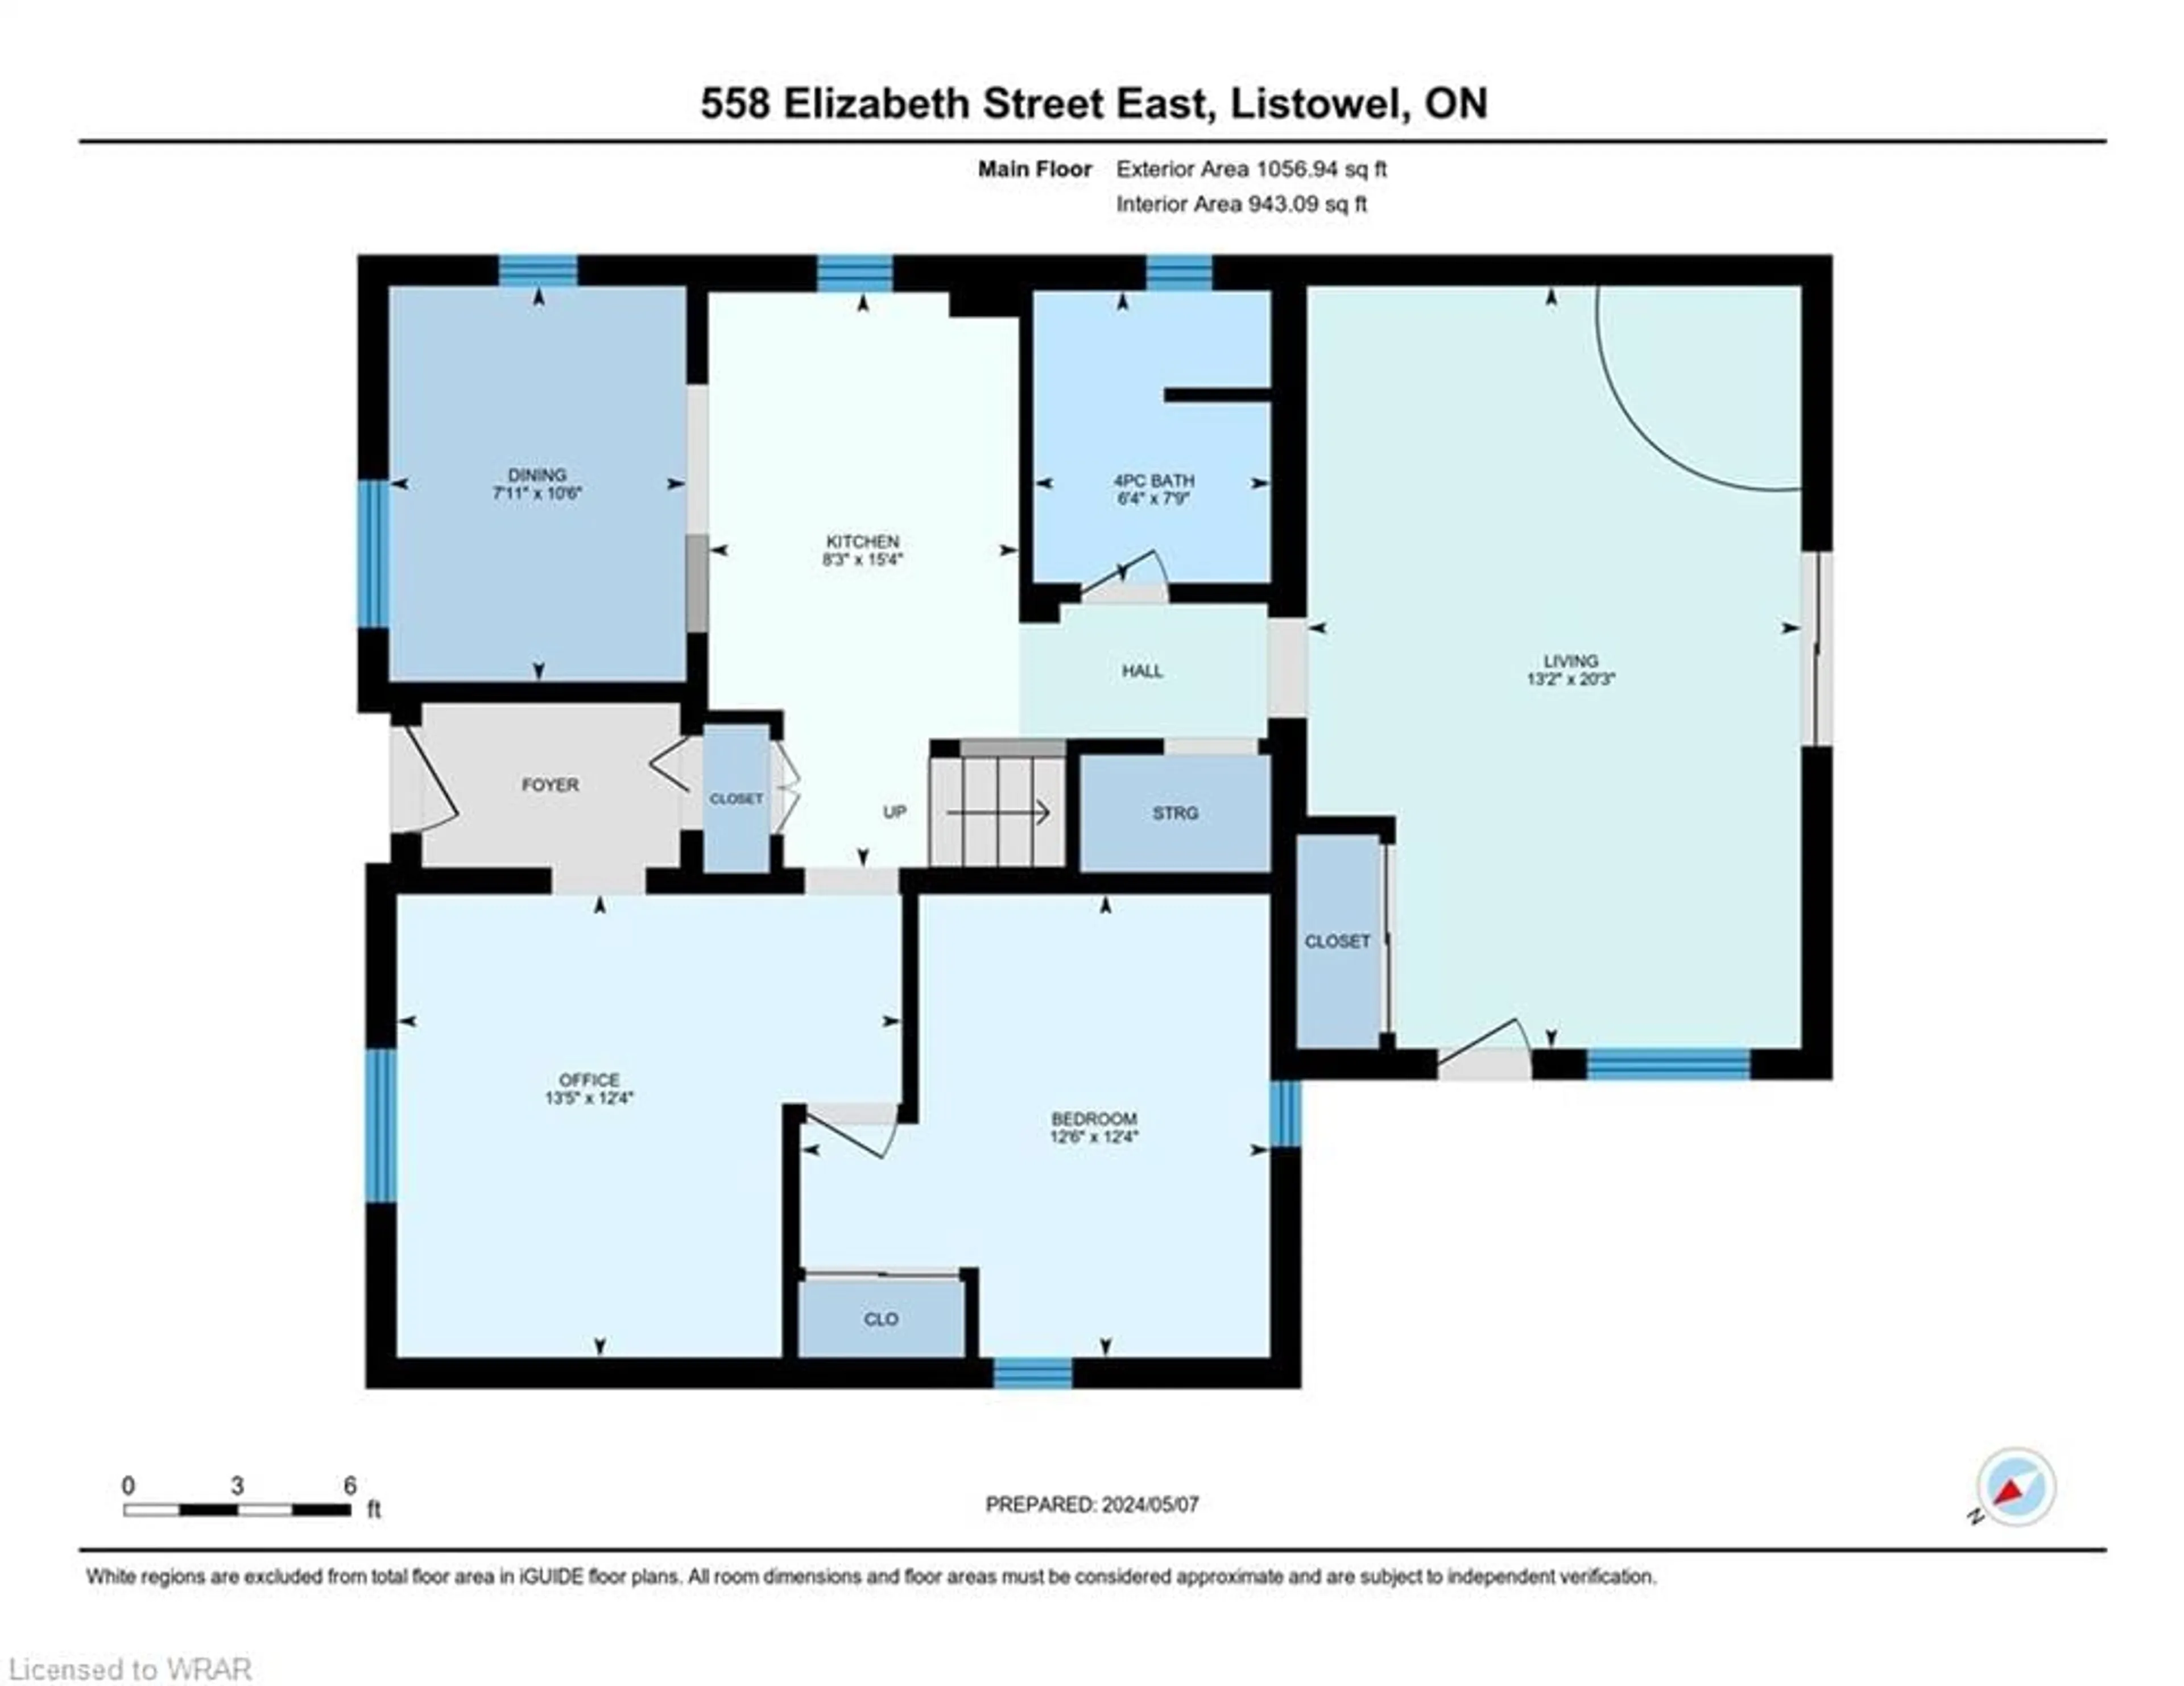 Floor plan for 558 Elizabeth St, Listowel Ontario N4W 2R2